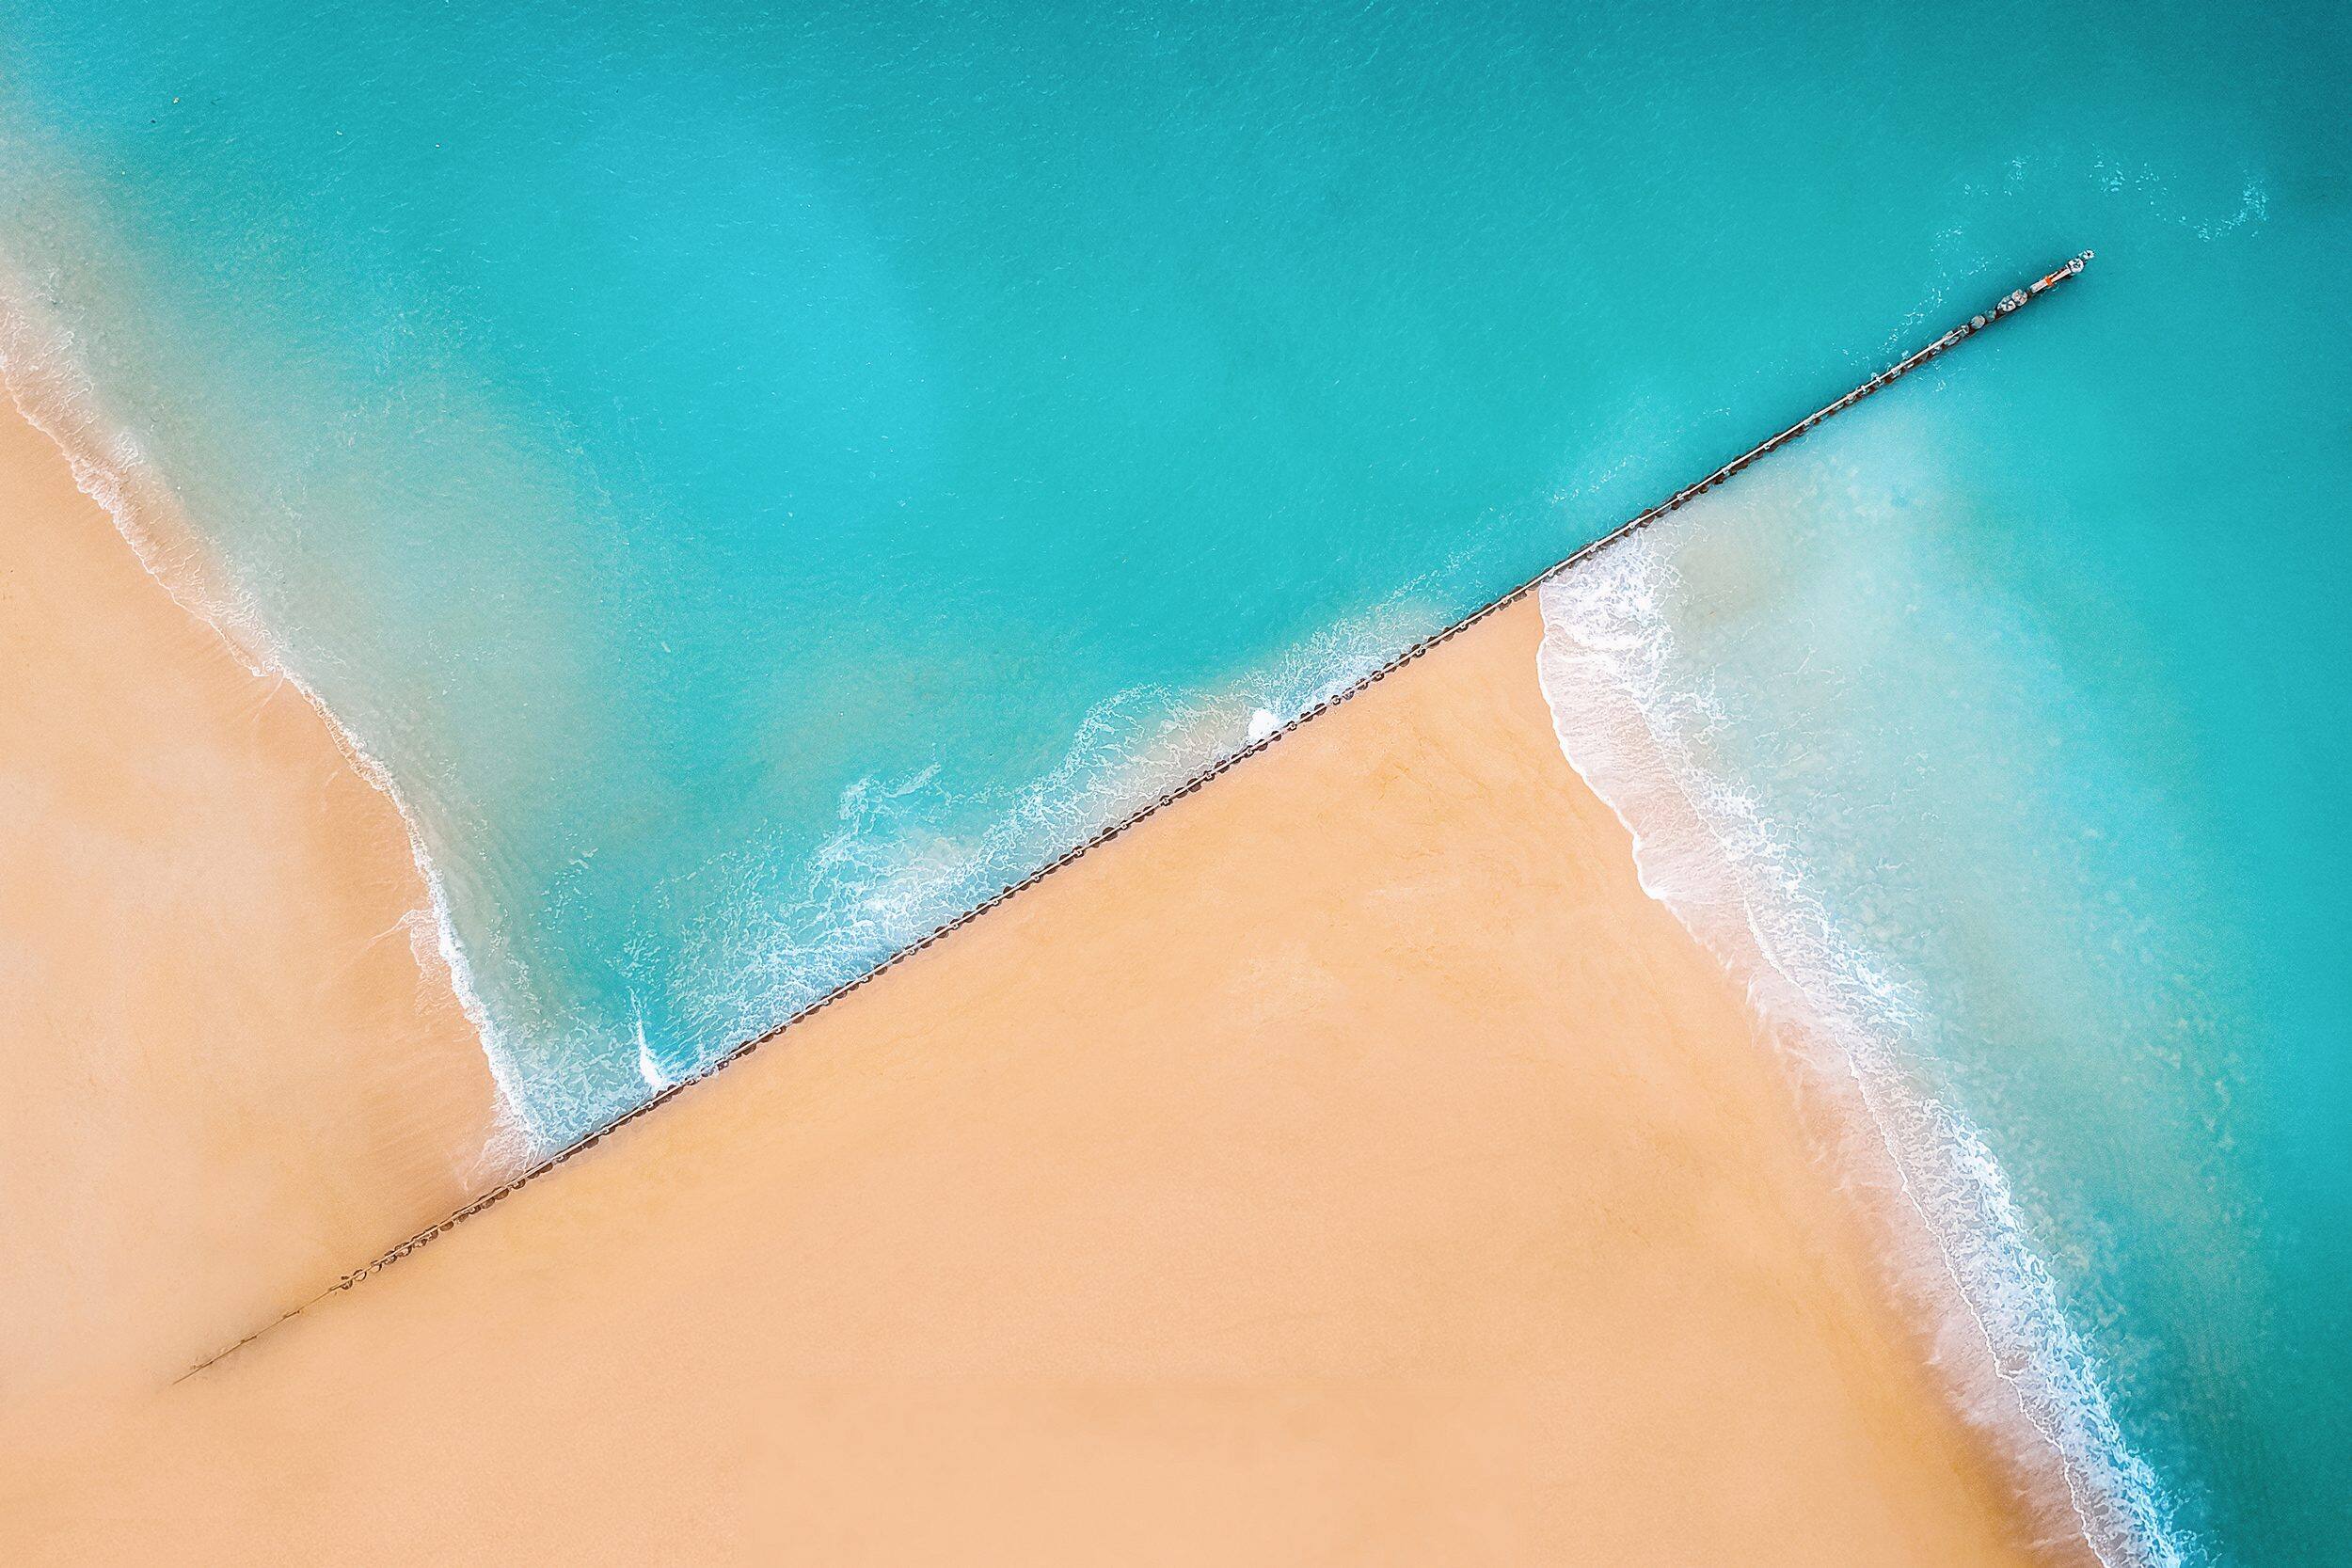 Aerial shot of a beach